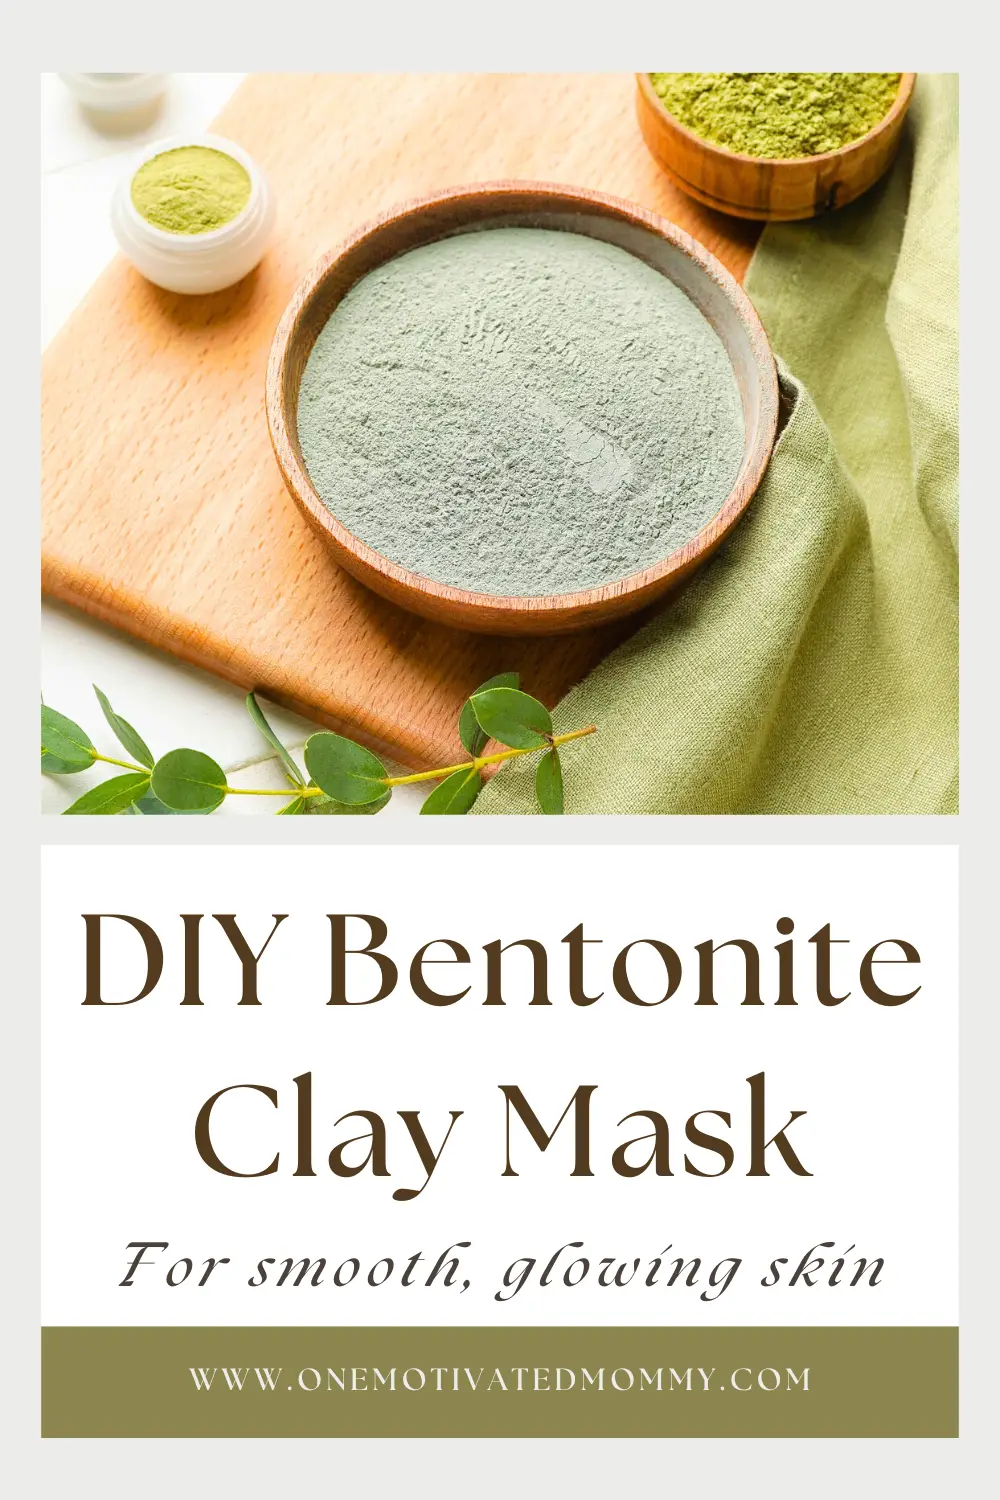 DIY Bentonite Clay Mask